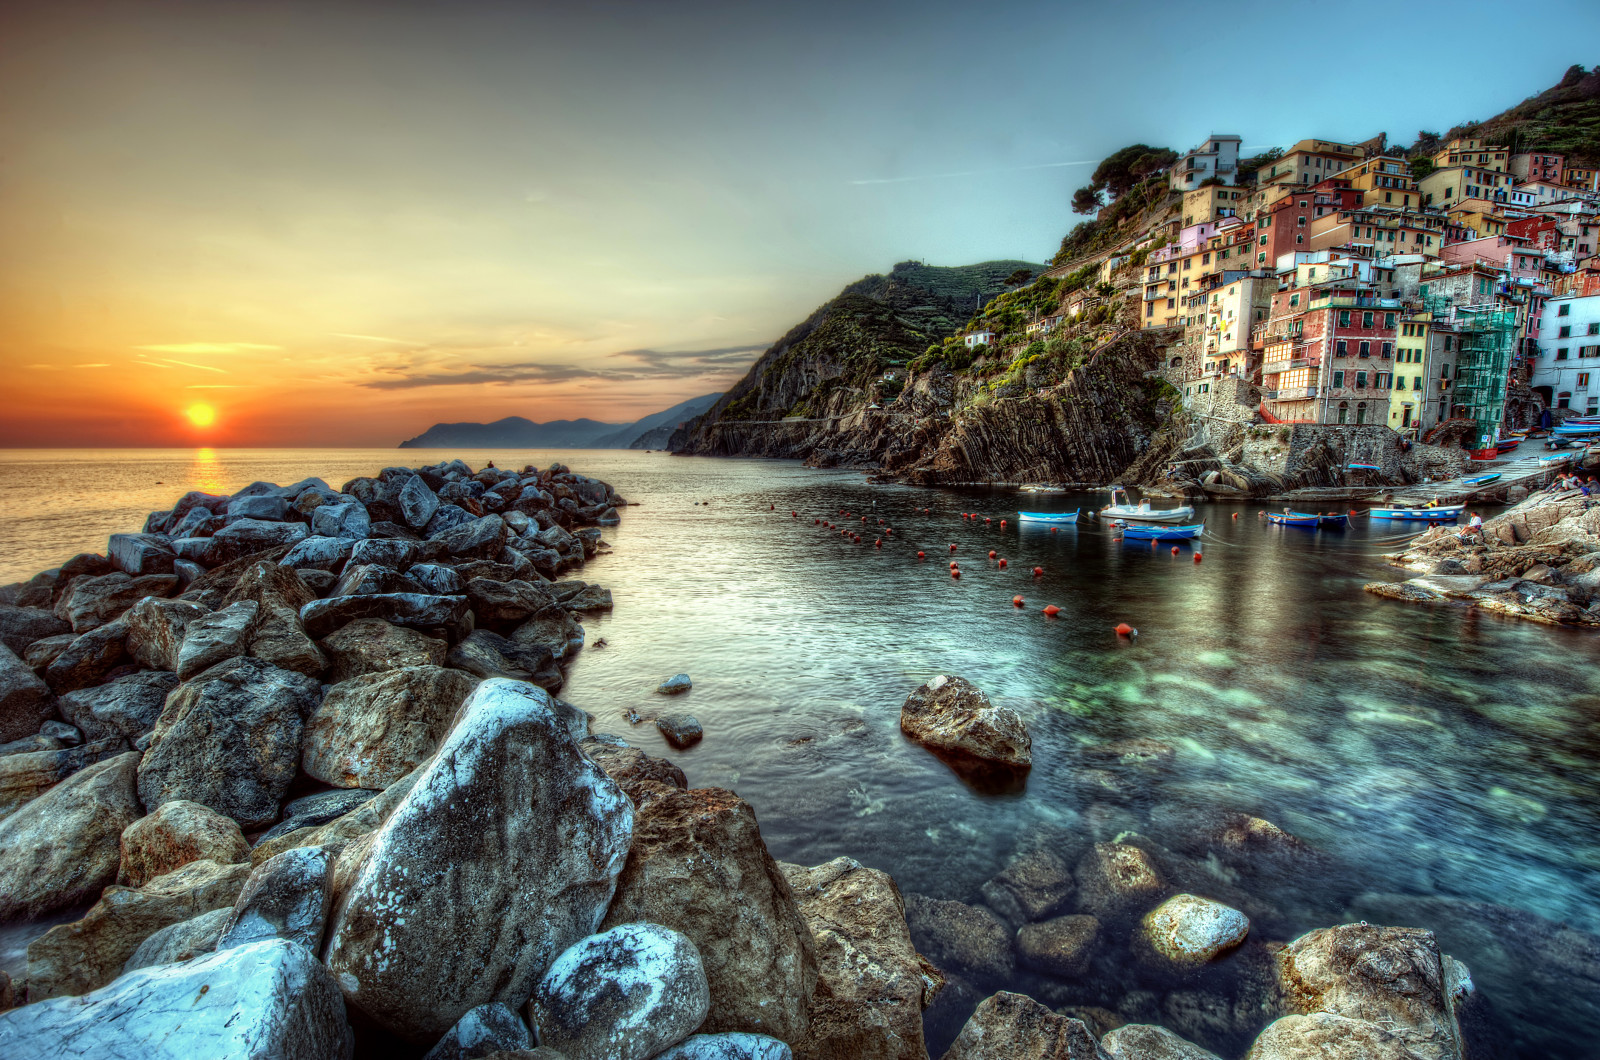 matahari terbenam, pantai, batu, laut, rumah, Italia, kapal, batu